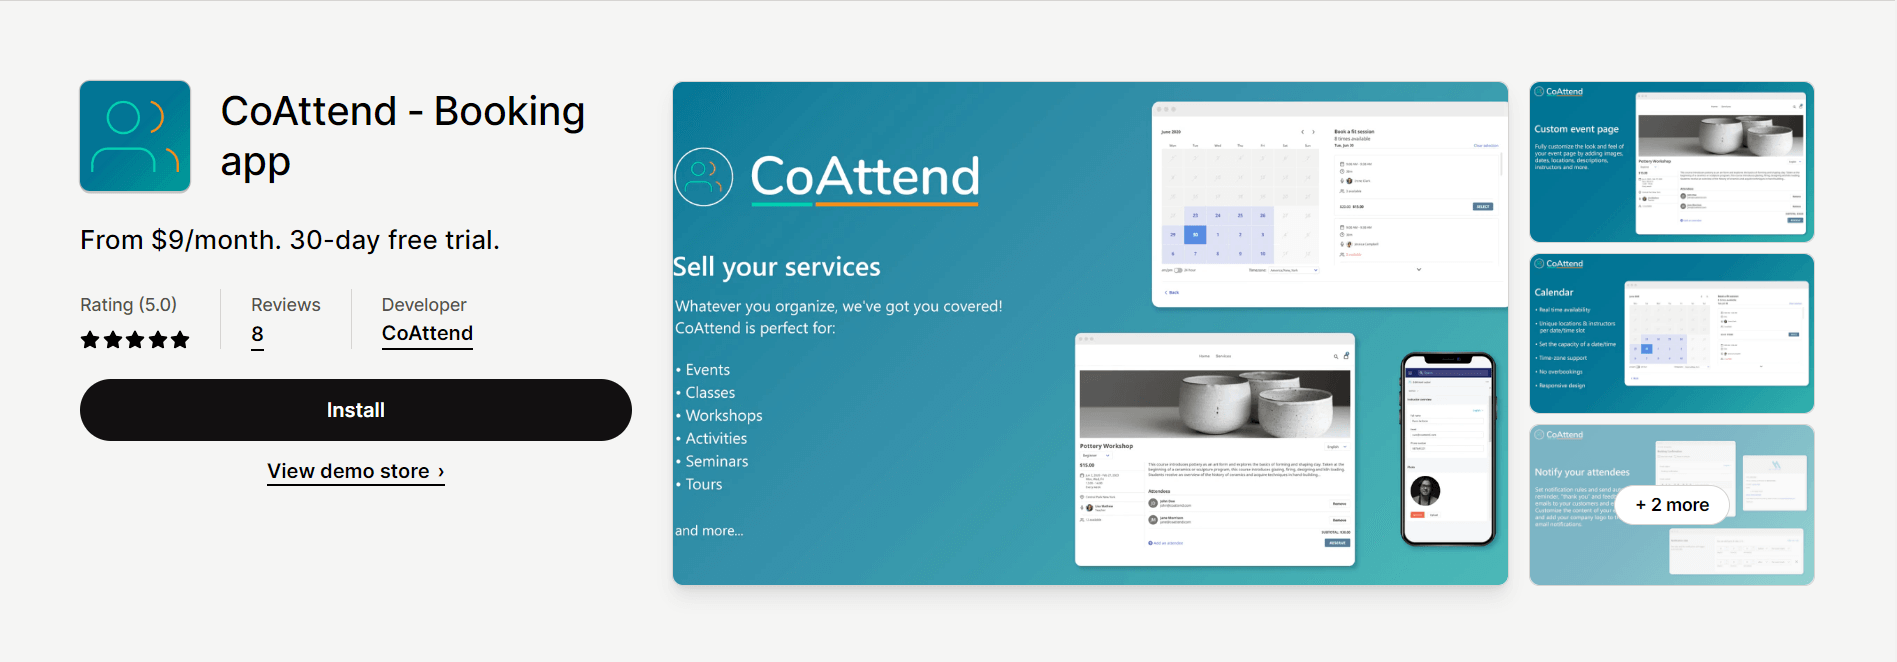 CoAttend - Booking app